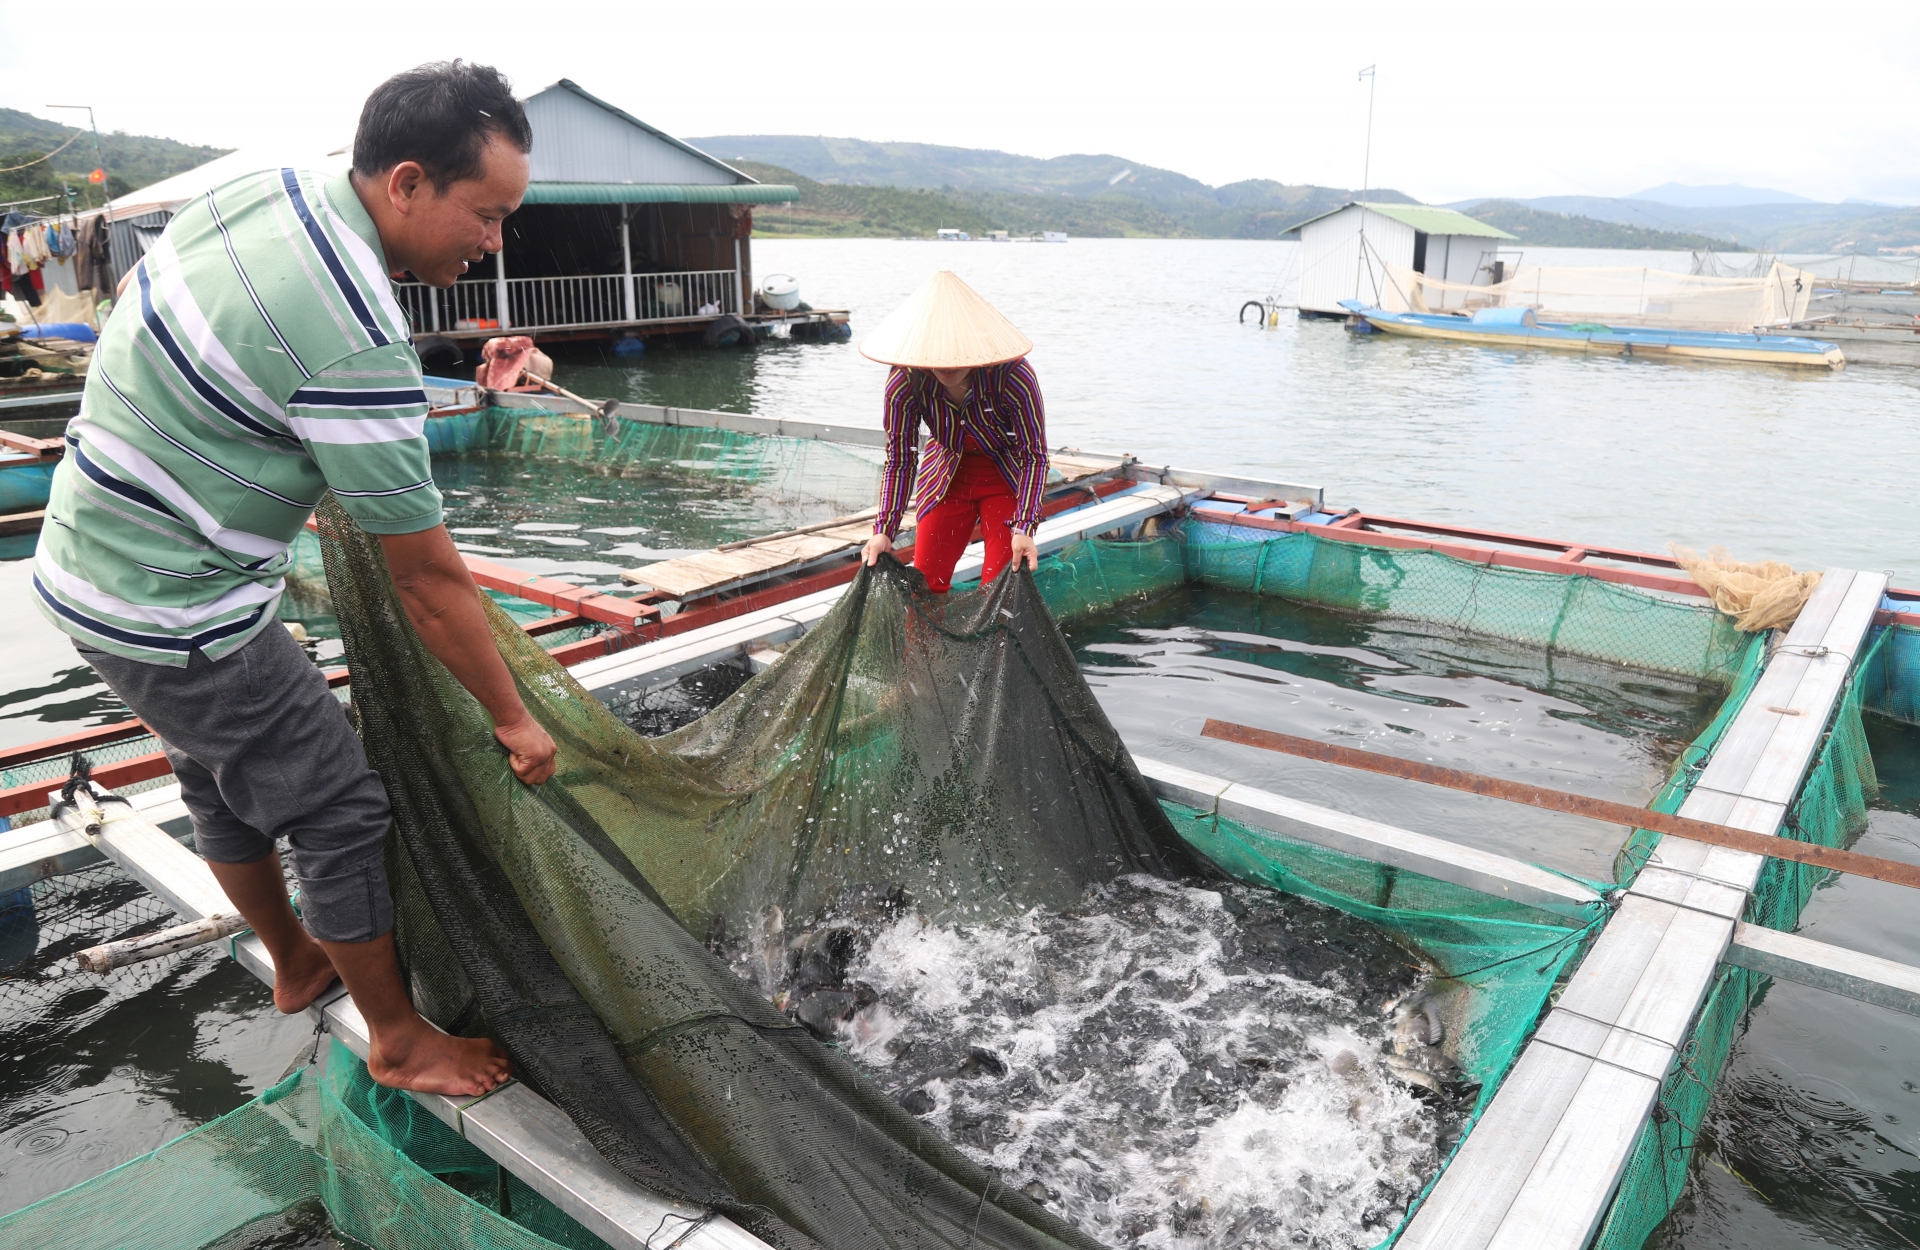 Ngoài việc đánh bắt cá tự nhiên, bà con còn đầu tư nuôi trồng thủy sản để ổn định cuộc sống